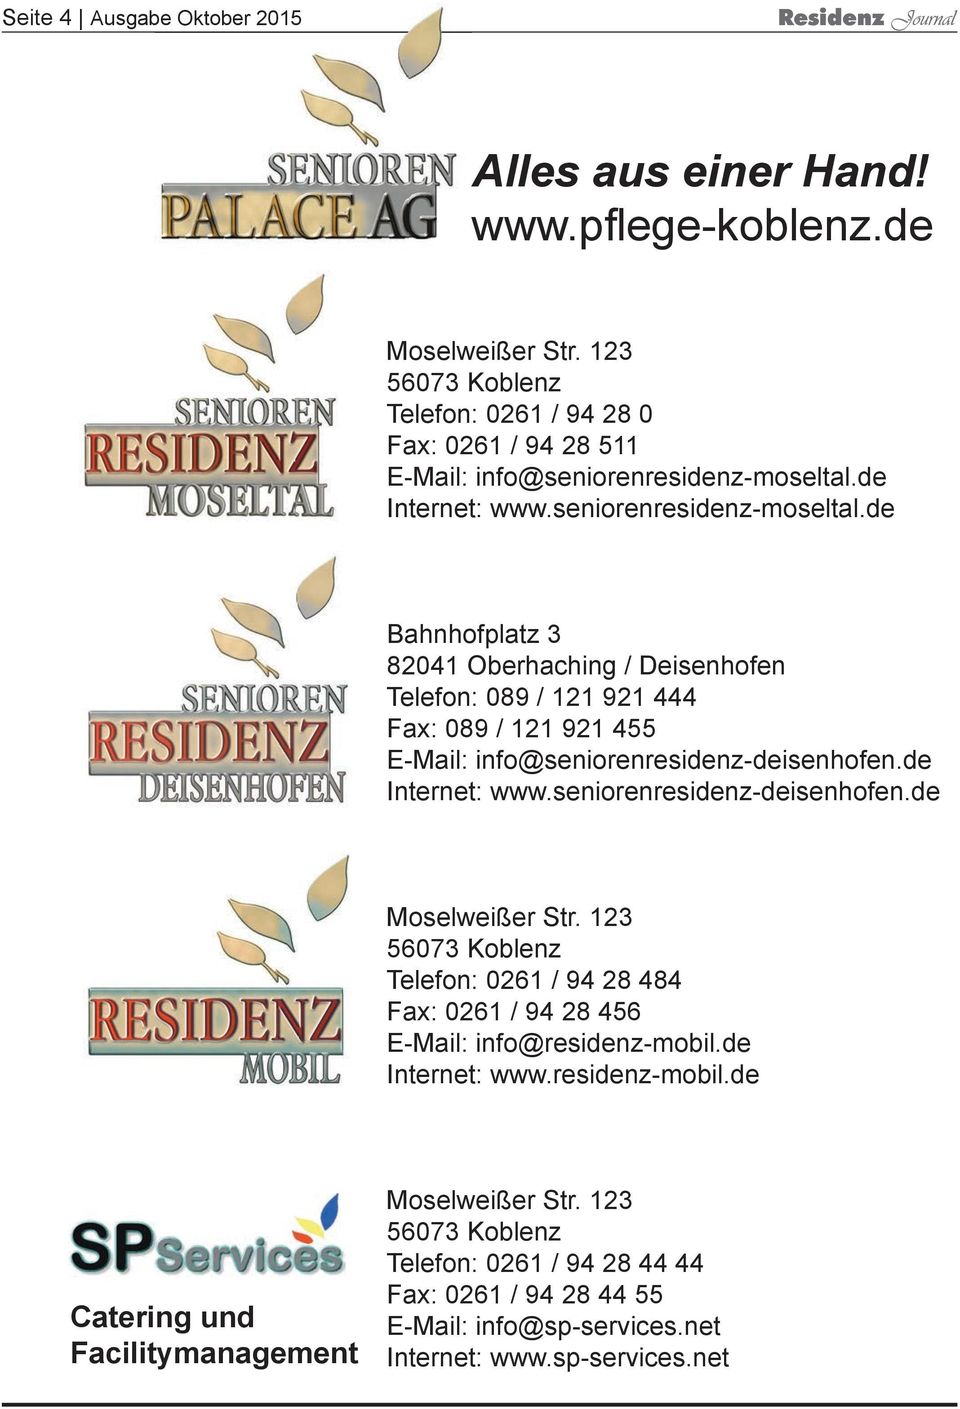 de Internet: www.seniorenresidenz-moseltal.de Bahnhofplatz 3 82041 Oberhaching / Deisenhofen Telefon: 089 / 121 921 444 Fax: 089 / 121 921 455 E-Mail: info@seniorenresidenz-deisenhofen.